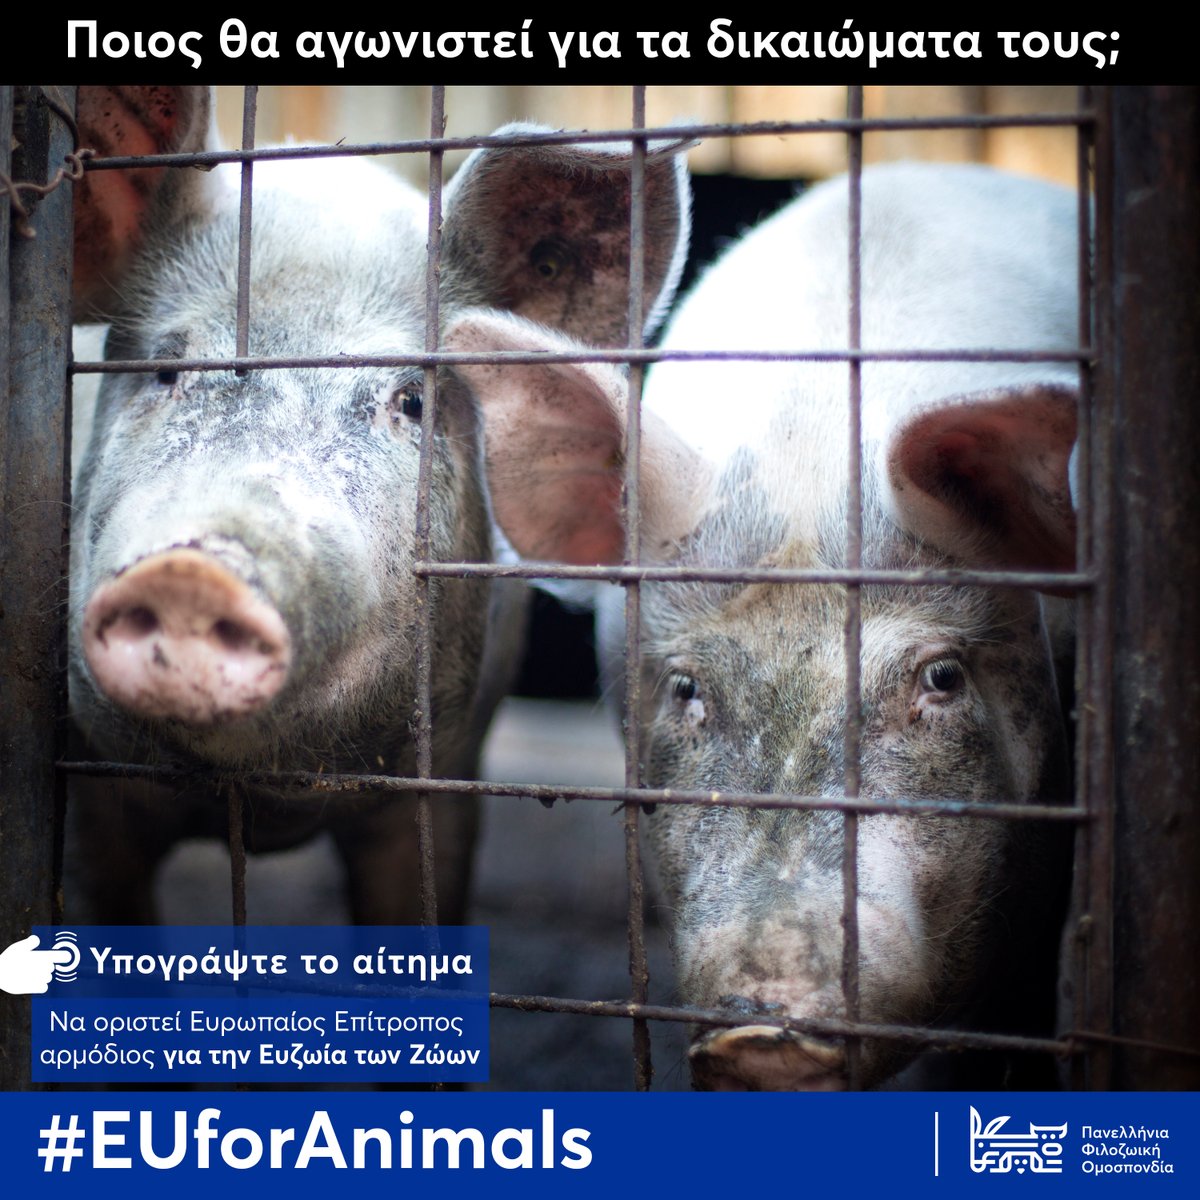 Ποιος θα αγωνιστεί για τα δικαιώματα τους; 
Τα ζώα χρειάζονται ισχυρότερη φωνή στην Ευρώπη. | Υπογράψτε εδώ | Πληροφορίες 👉 ow.ly/nxmI50PERbQ

#EUforAnimals #Φιλοζωική #Φιλοζωία #animalrights #greece #ζώα #animalcharity #Ελλάδα